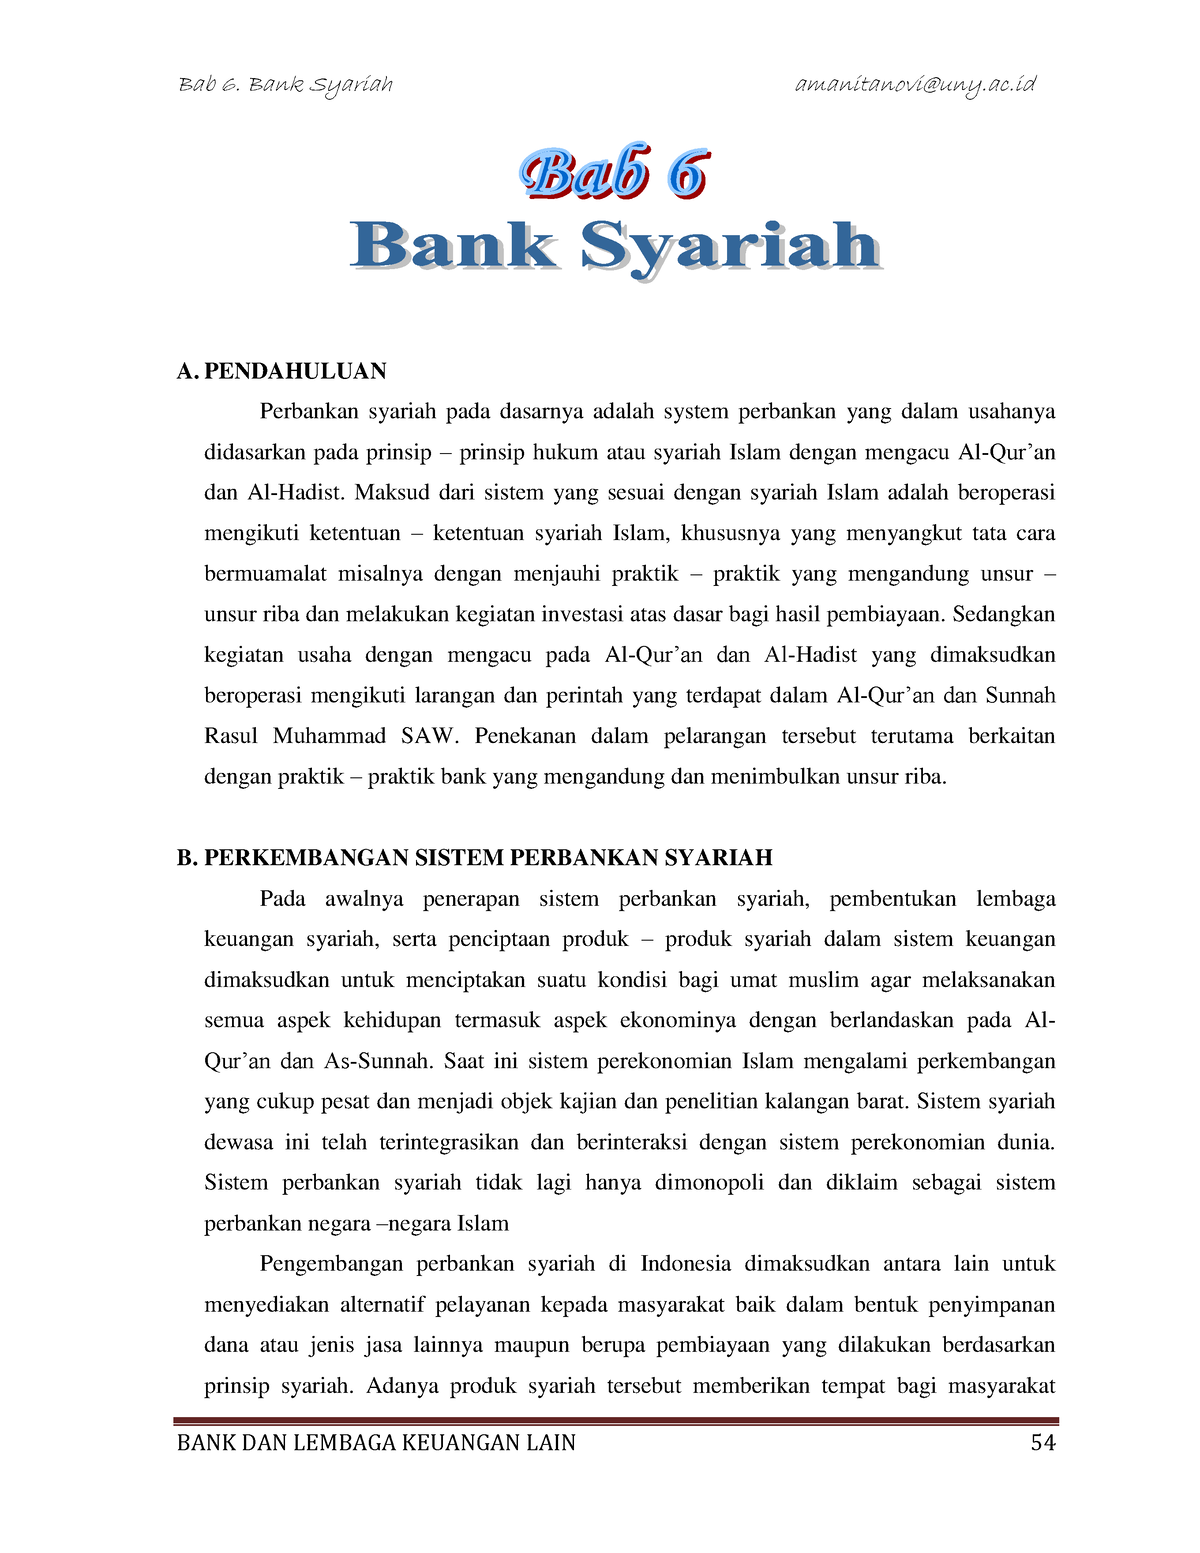 judul essay tentang perbankan syariah